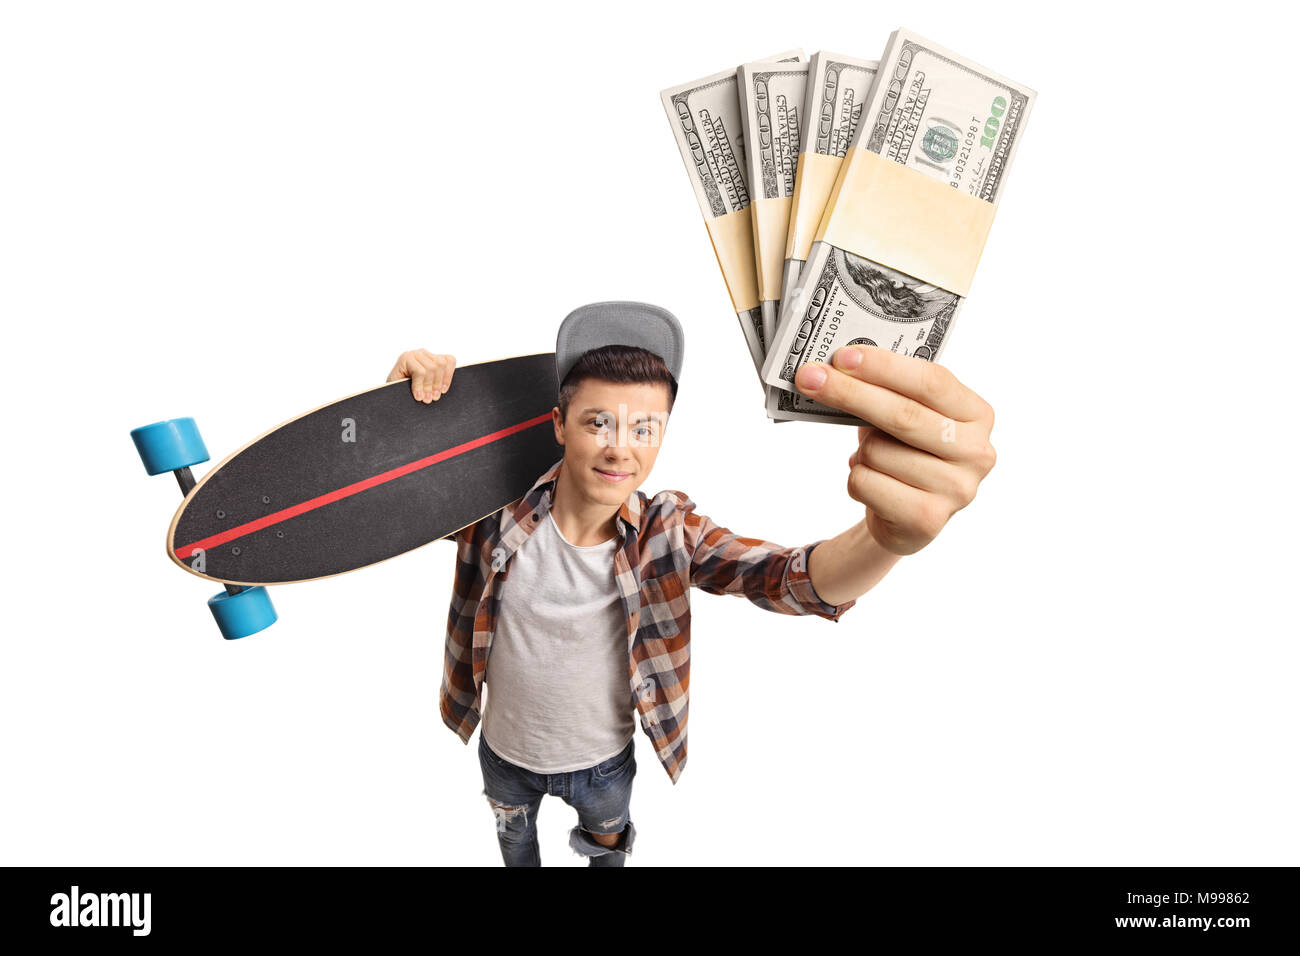 Jugendliche skater Holding ein Longboard übersicht Geld Bundles auf weißem Hintergrund Stockfoto